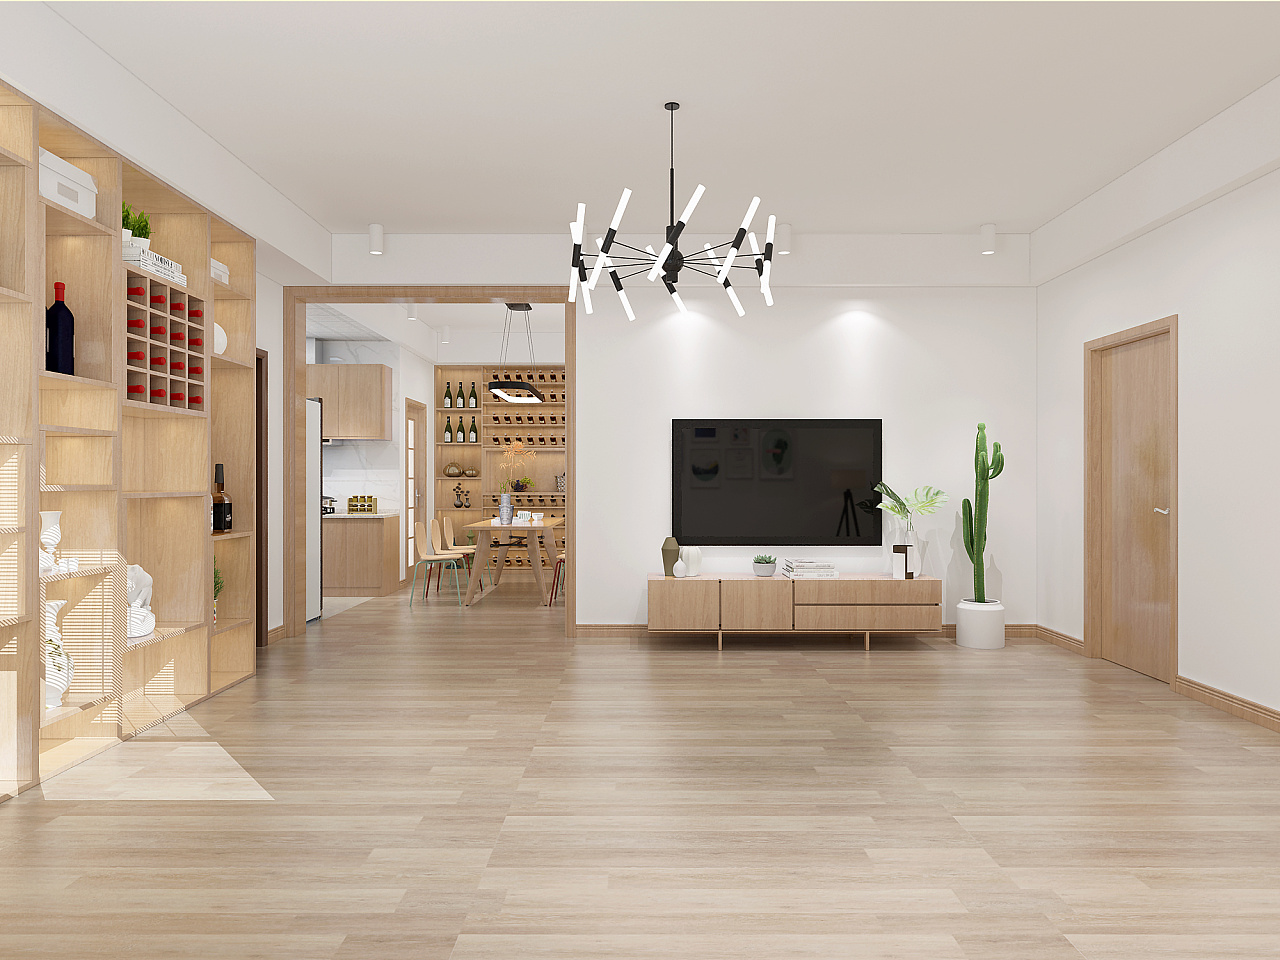 客厅橡木地板装修效果图2015图片 – 设计本装修效果图